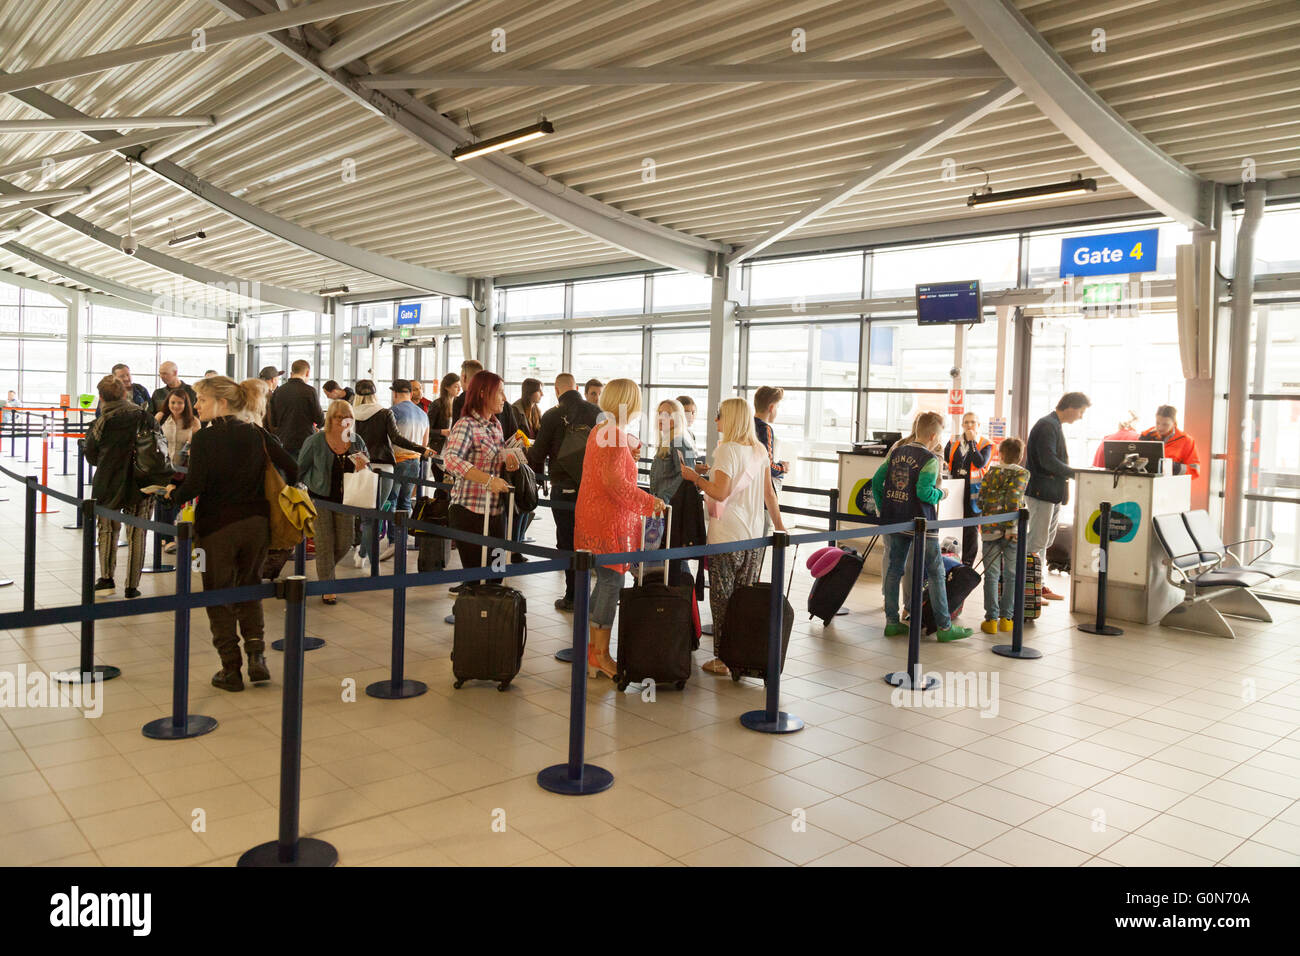 Los pasajeros aéreos, gente esperando en la puerta de entrada, salidas, Londres aeropuerto de Southend, Southend, Essex UK Foto de stock